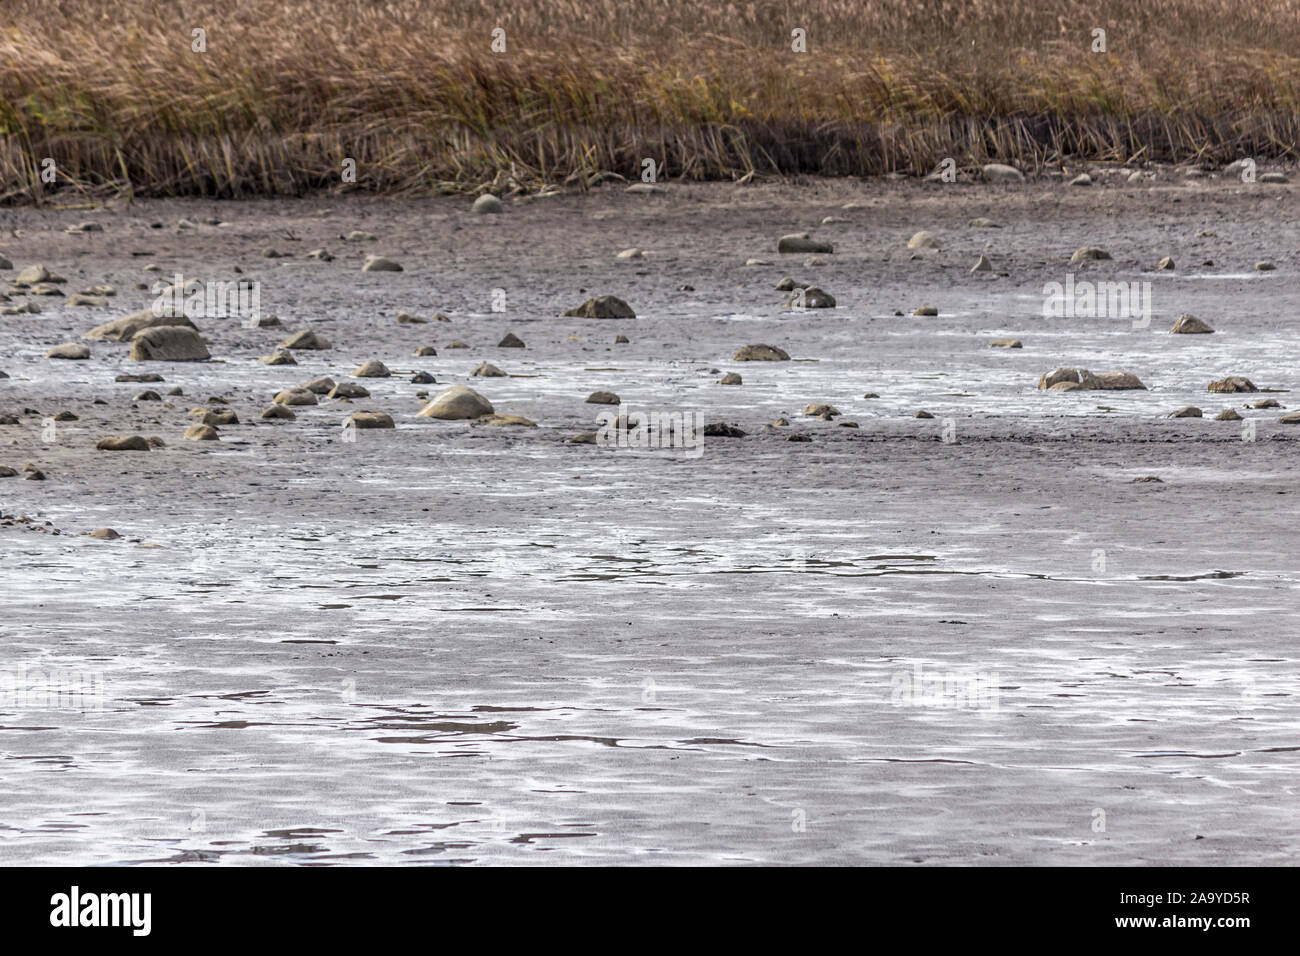 Herbst. Ein Teich für die Zucht von Fisch ohne Wasser. Die Steine liegen auf dem Schlamm unten. Im Hintergrund Rohrkolben. Fischerei. Podlasien, Polen. Stockfoto